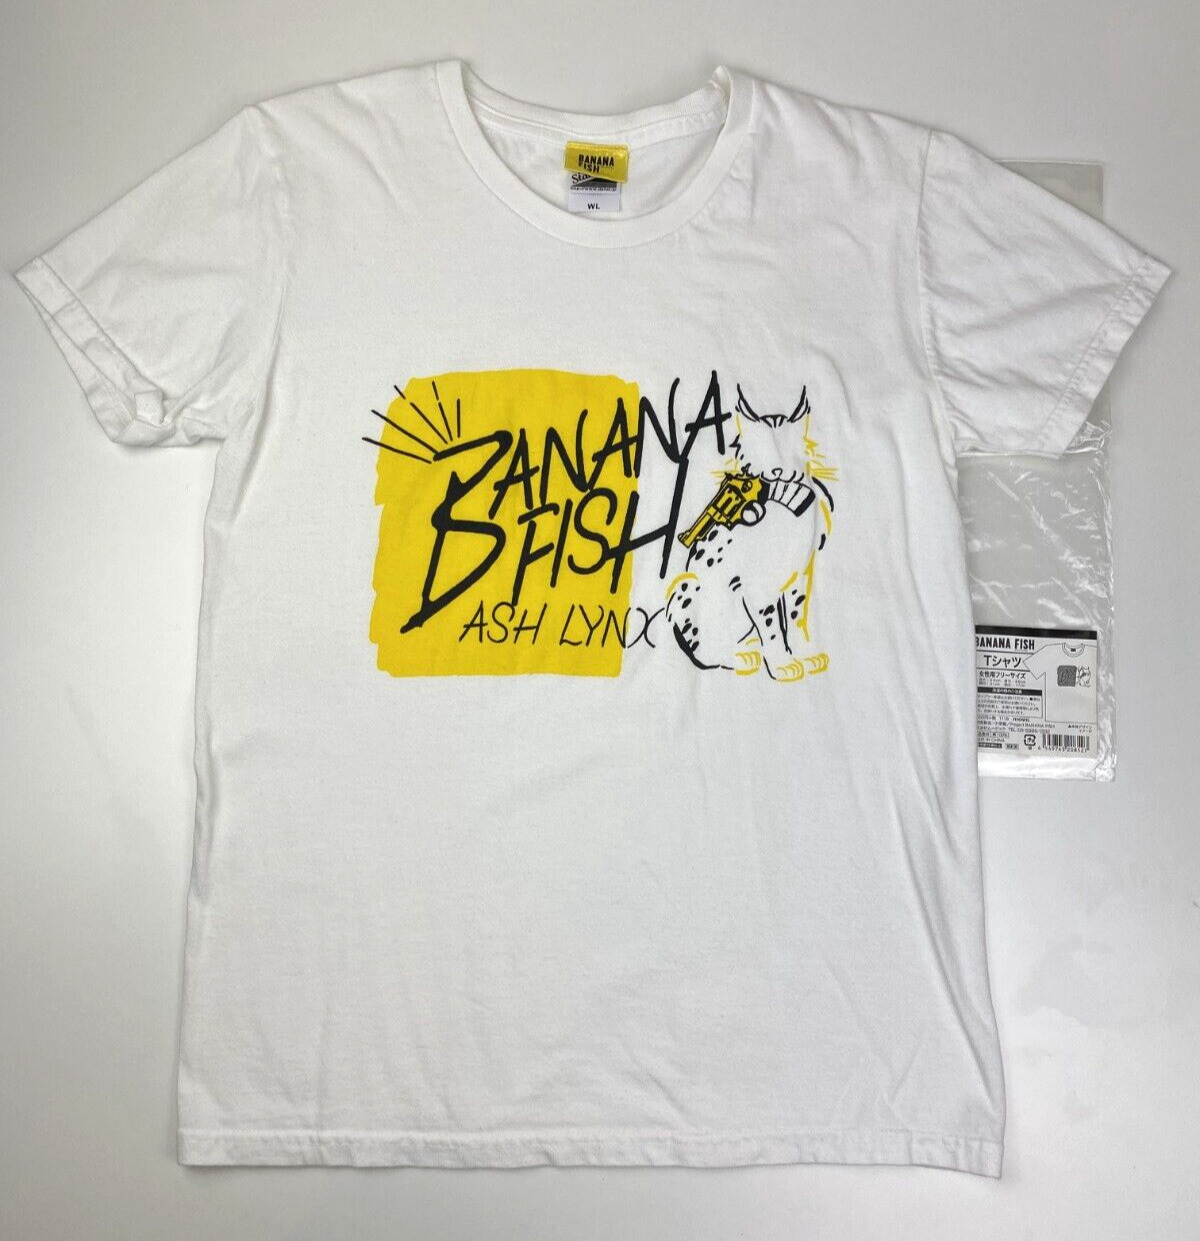 BANANA FISH shirt Ash Lynx Wildcat Image Edition - Official Banana Fish T-shirt